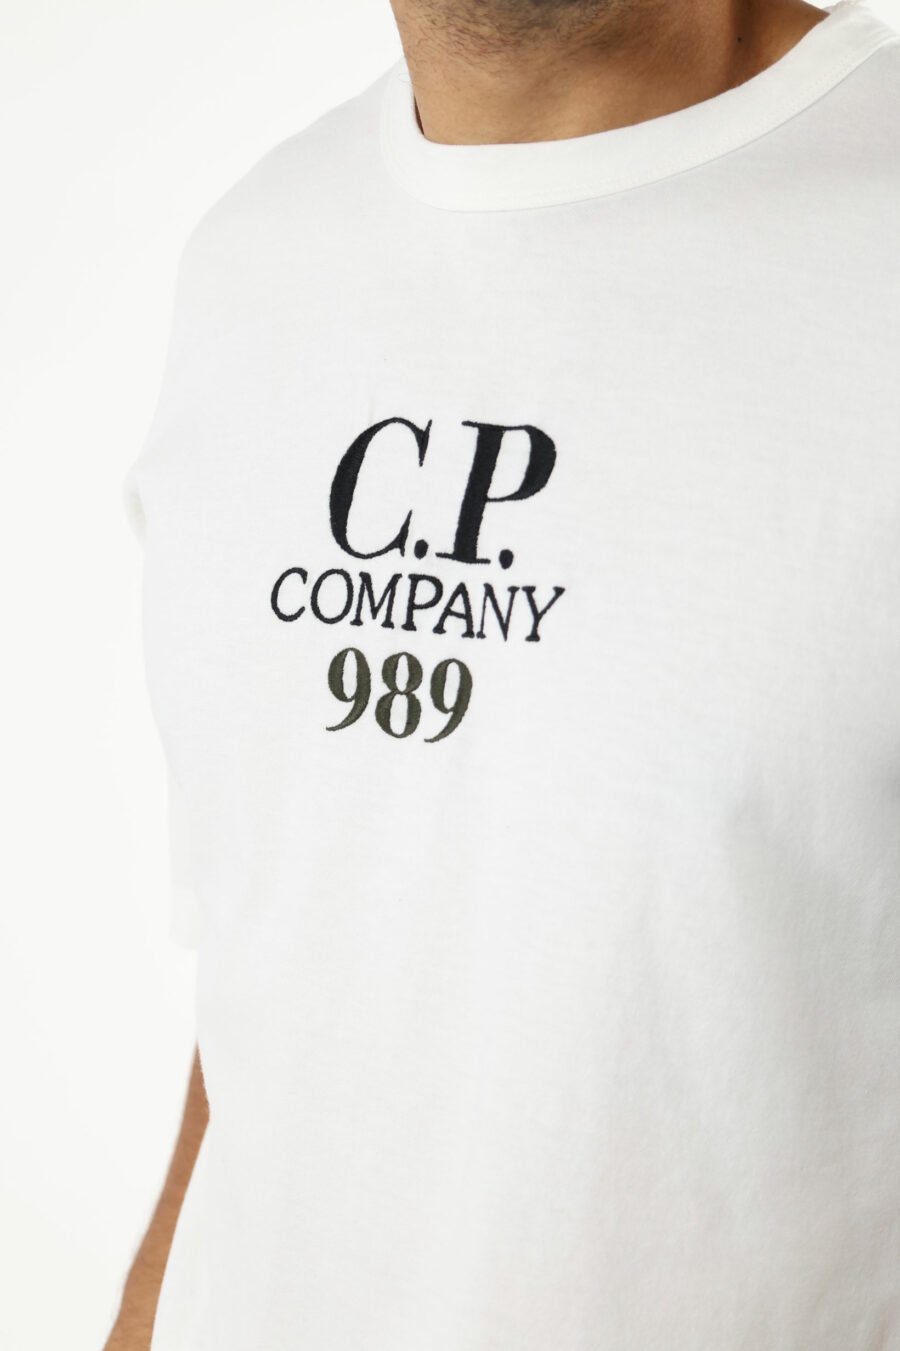 Camiseta blanca "oversize" con minilogo "cp 989" - 111319